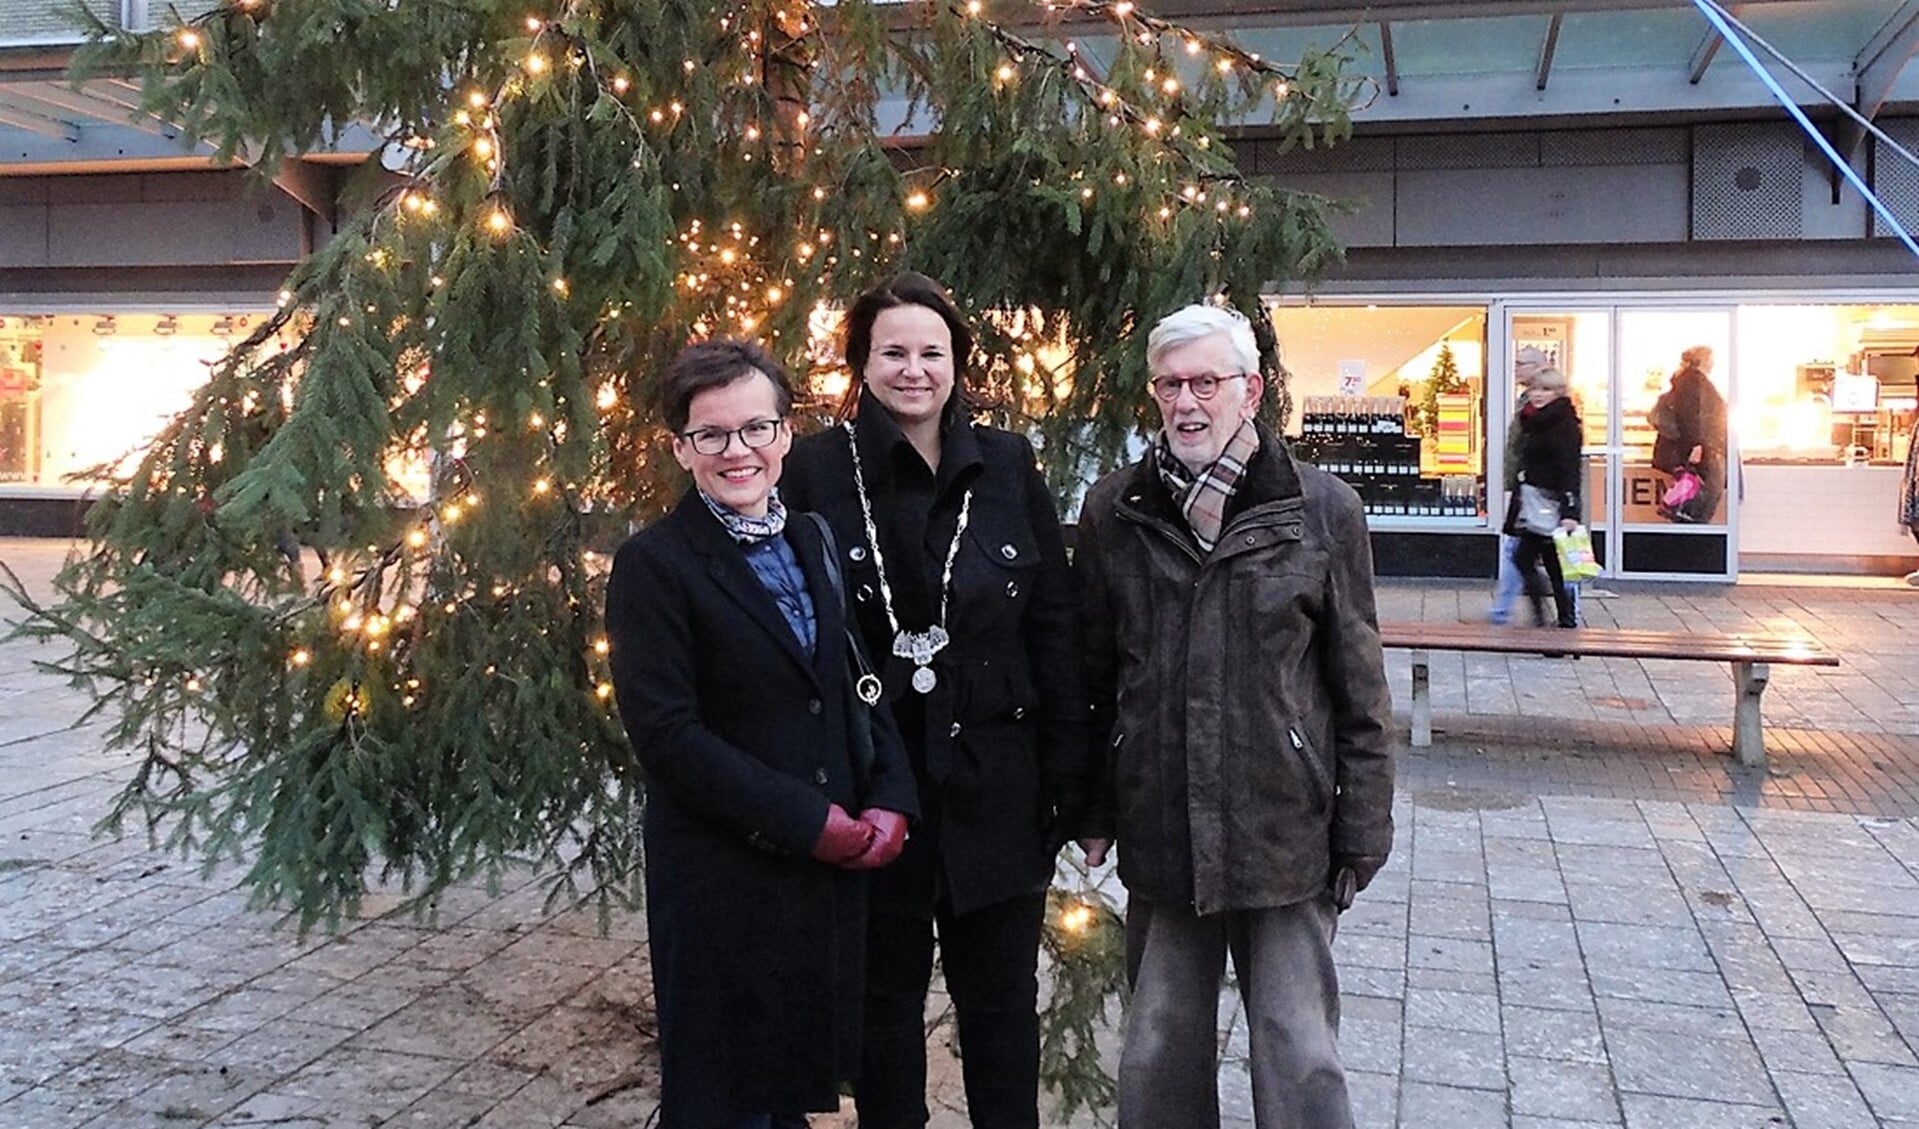 Wethouder Stemerdink en Renata Kowalska van de Poolse ambassade ontstaken de kerstboomverlichting.